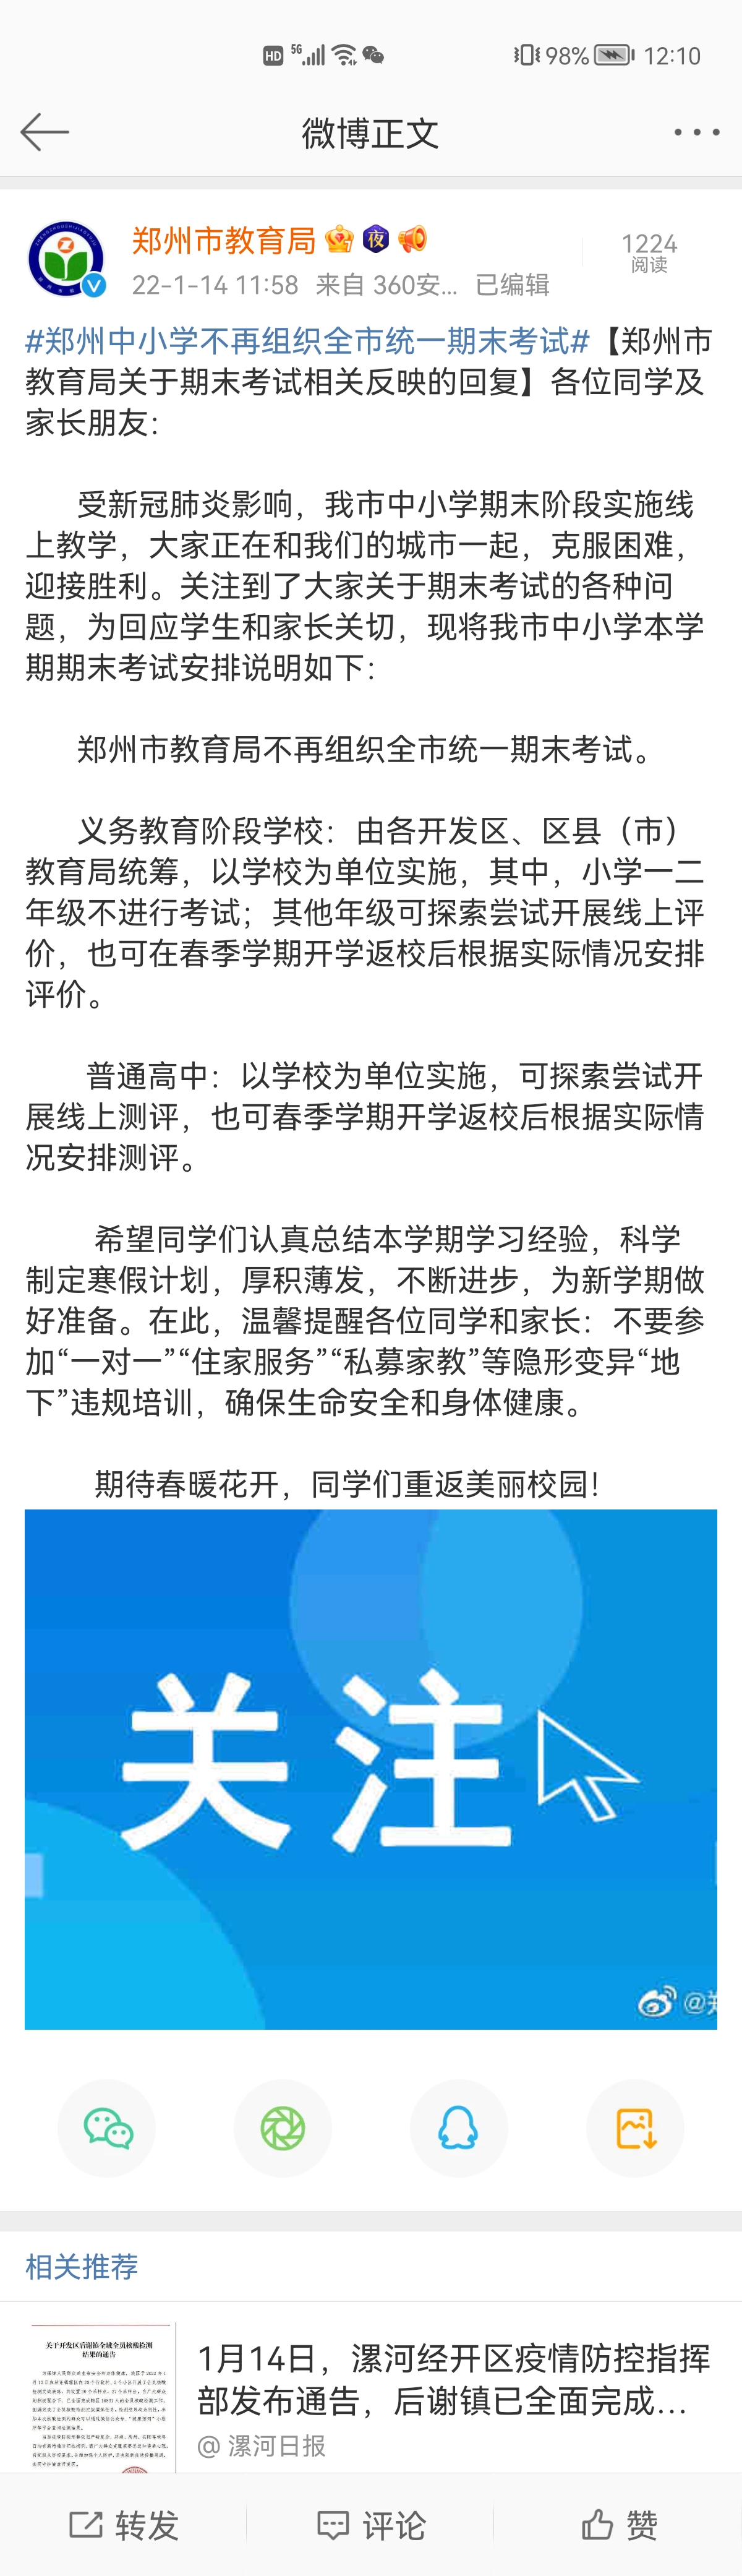 郑州市不再组织全市统一期末考试